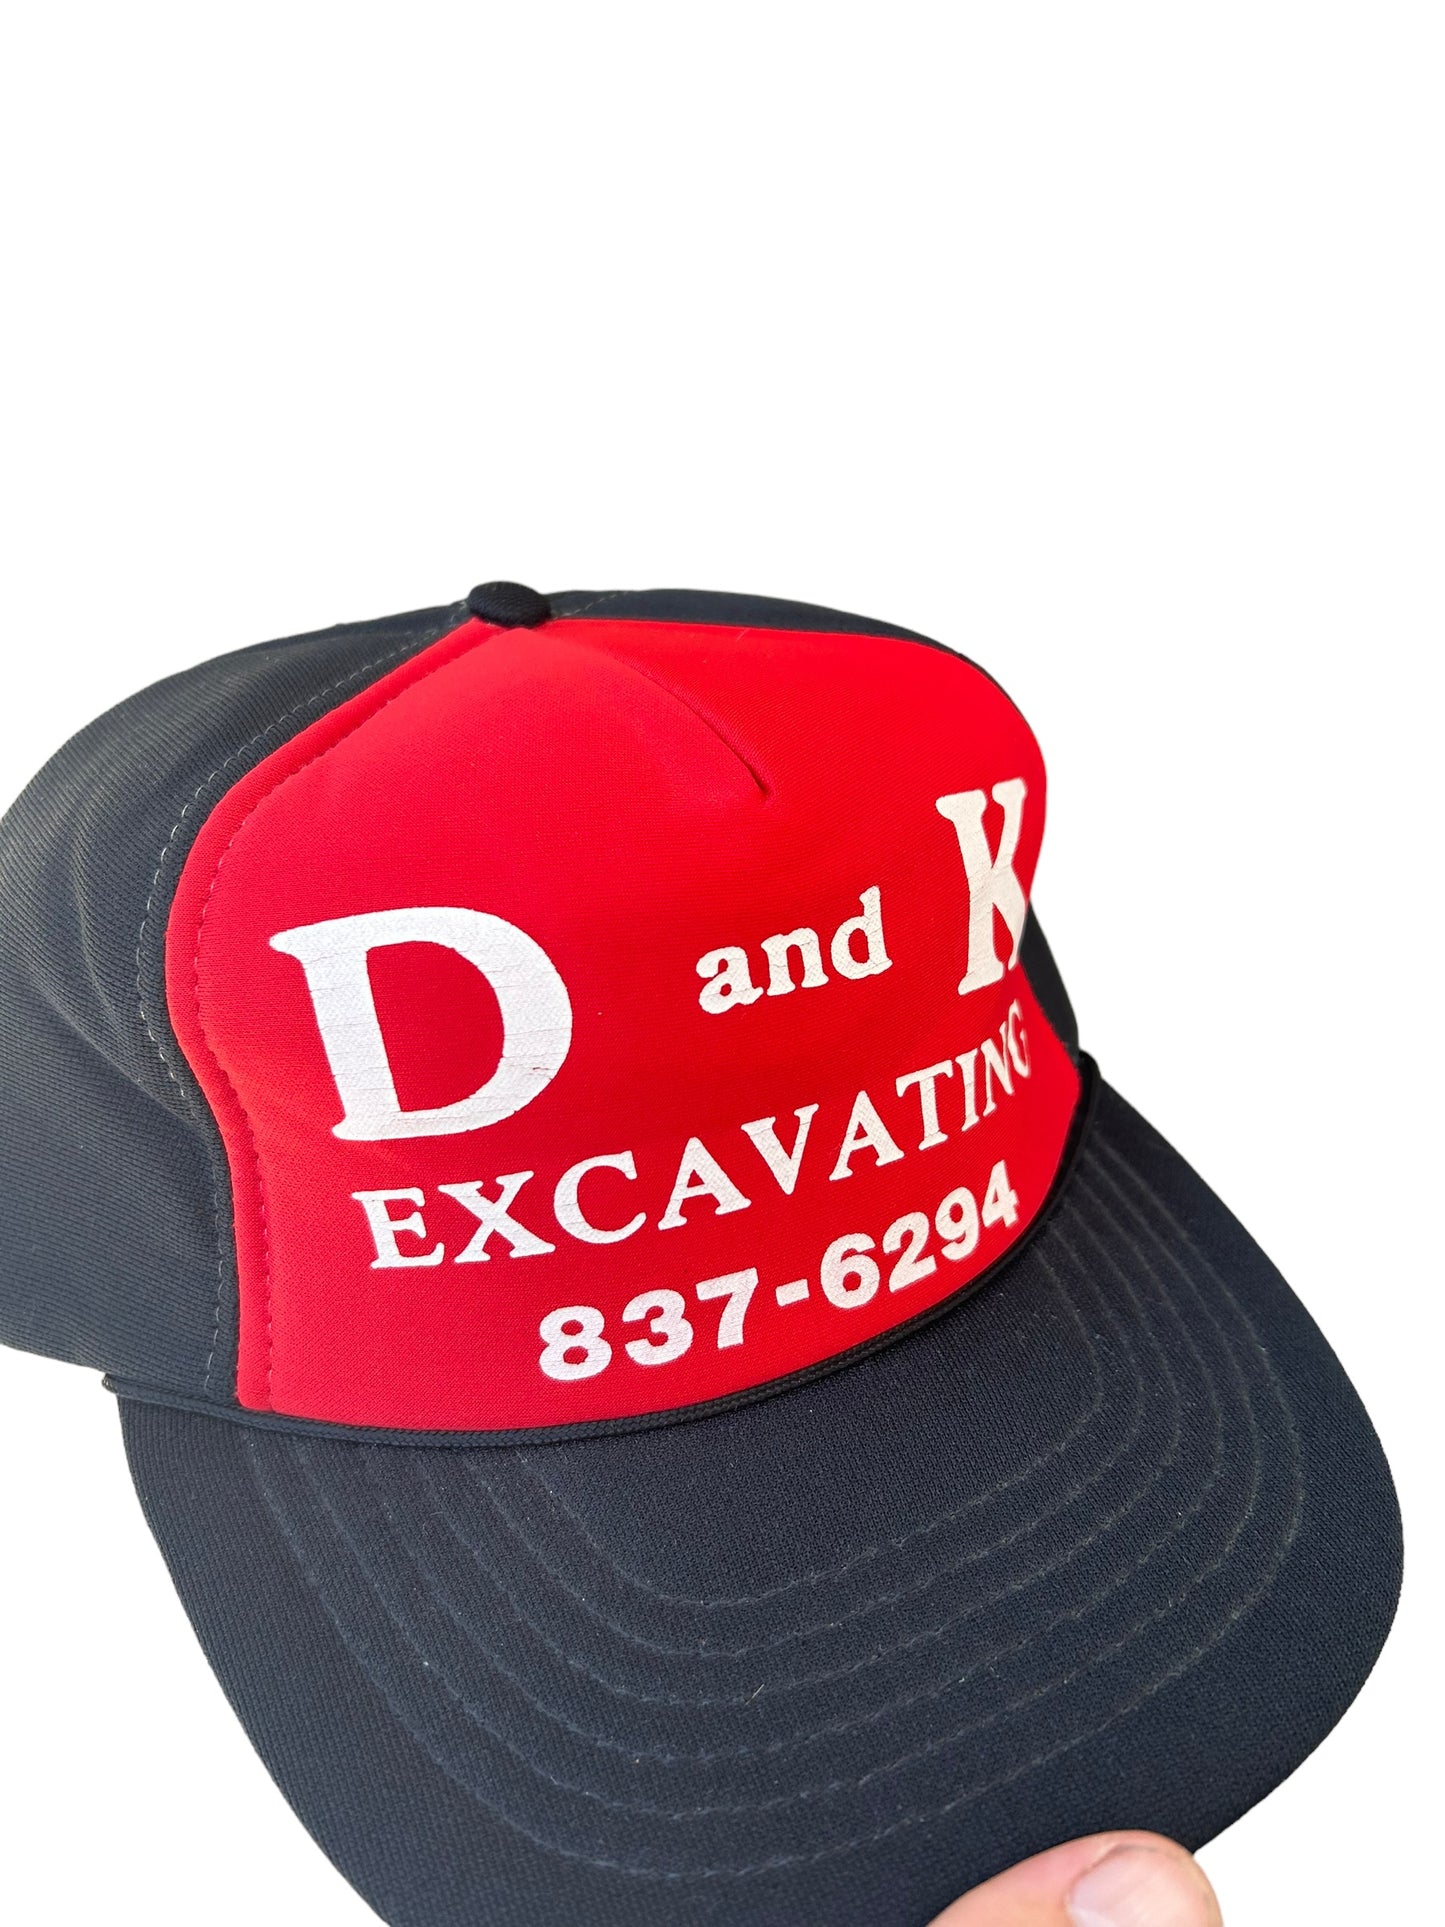 Vintage Excavating Cap